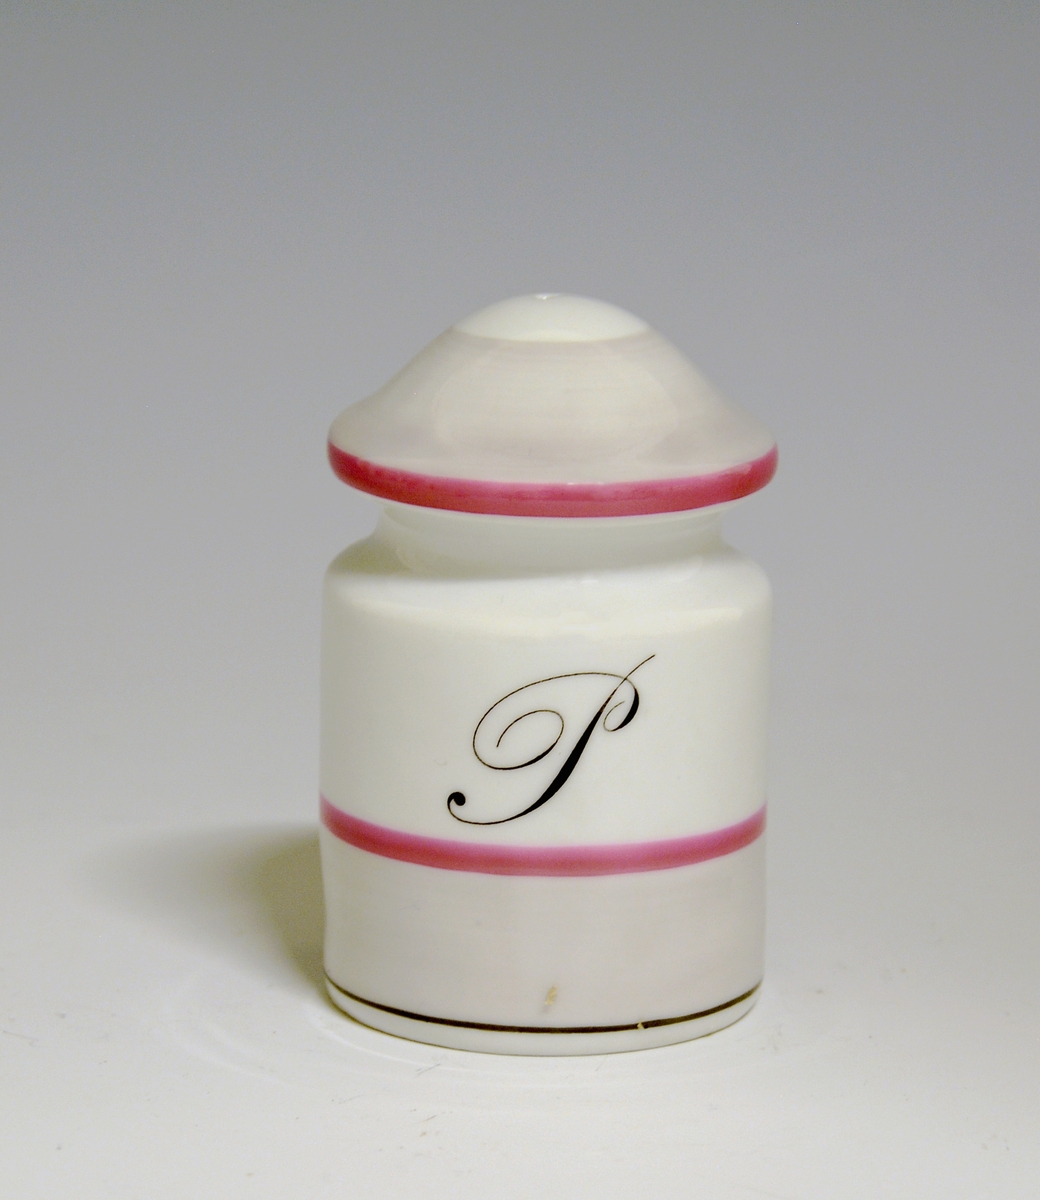 Saltdrysse av porselen. Hvit glasur. Sylindrisk form med inntrapping i øvre del. med rosa striper og grått bånd.
Modell: Eystein